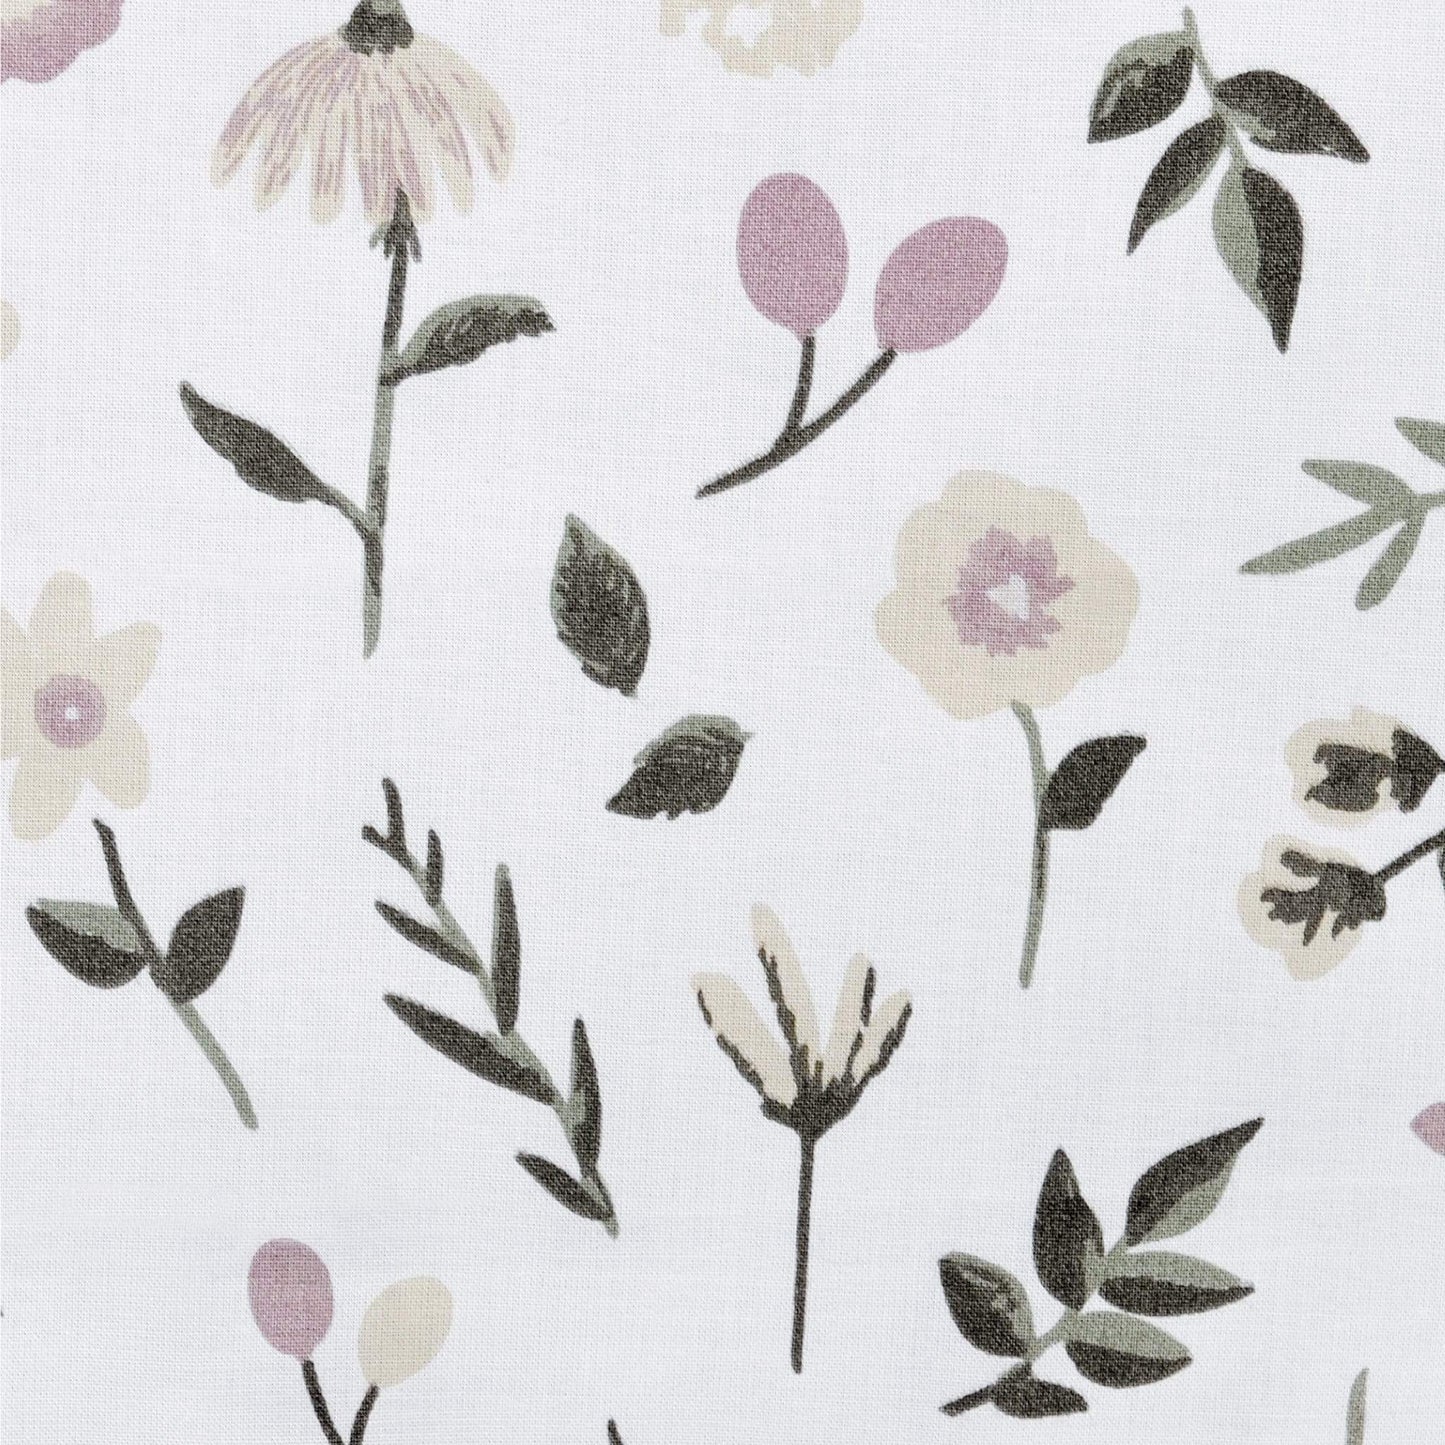 Duvet cover & insert - Floral